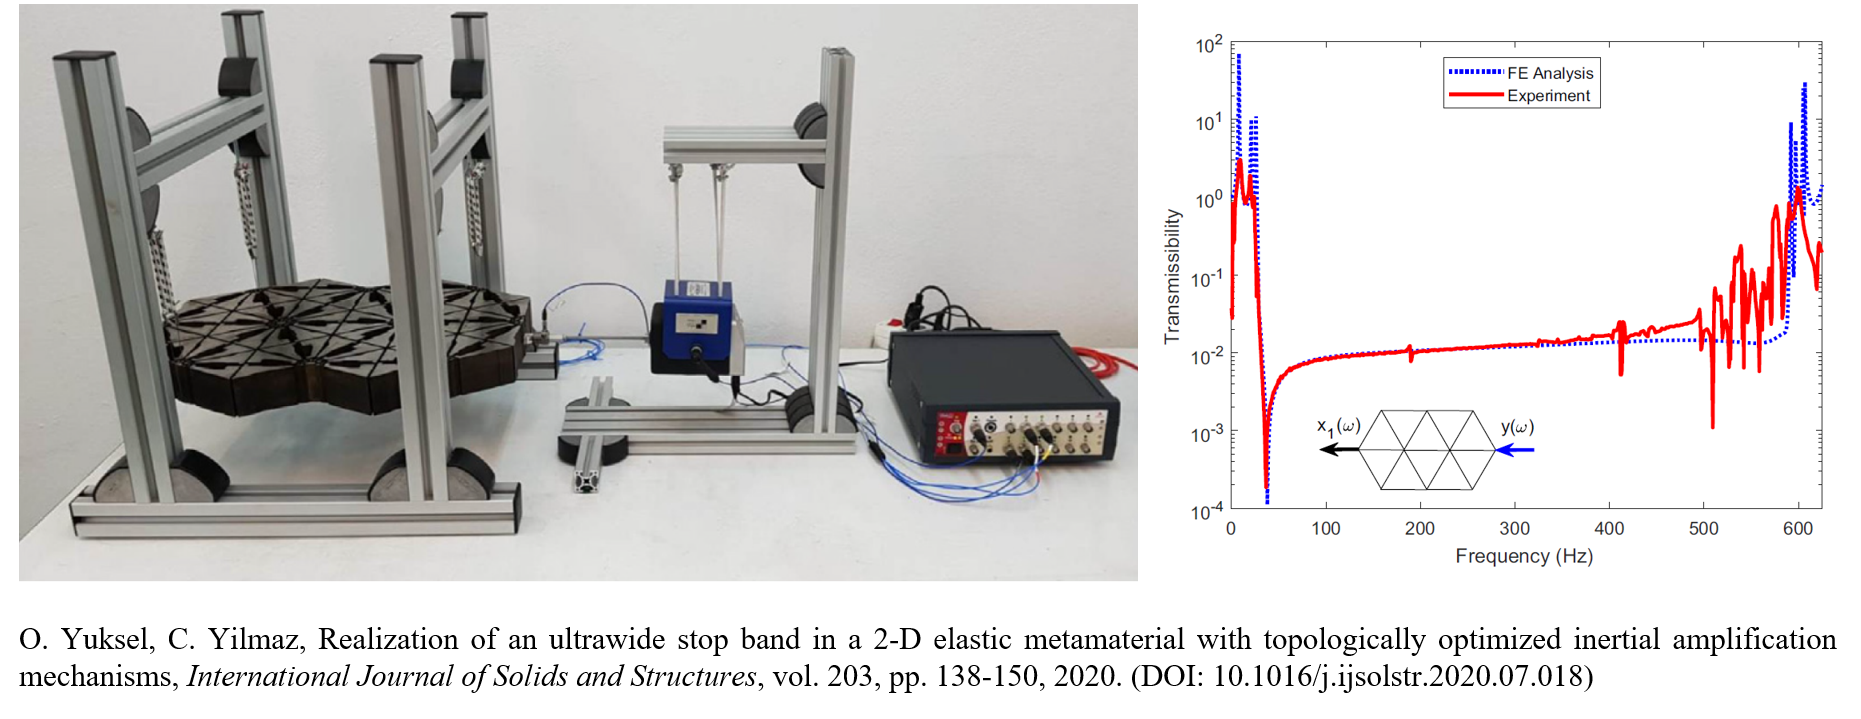 2-D Elastic Metamaterial with an Ultrawide Bandgap